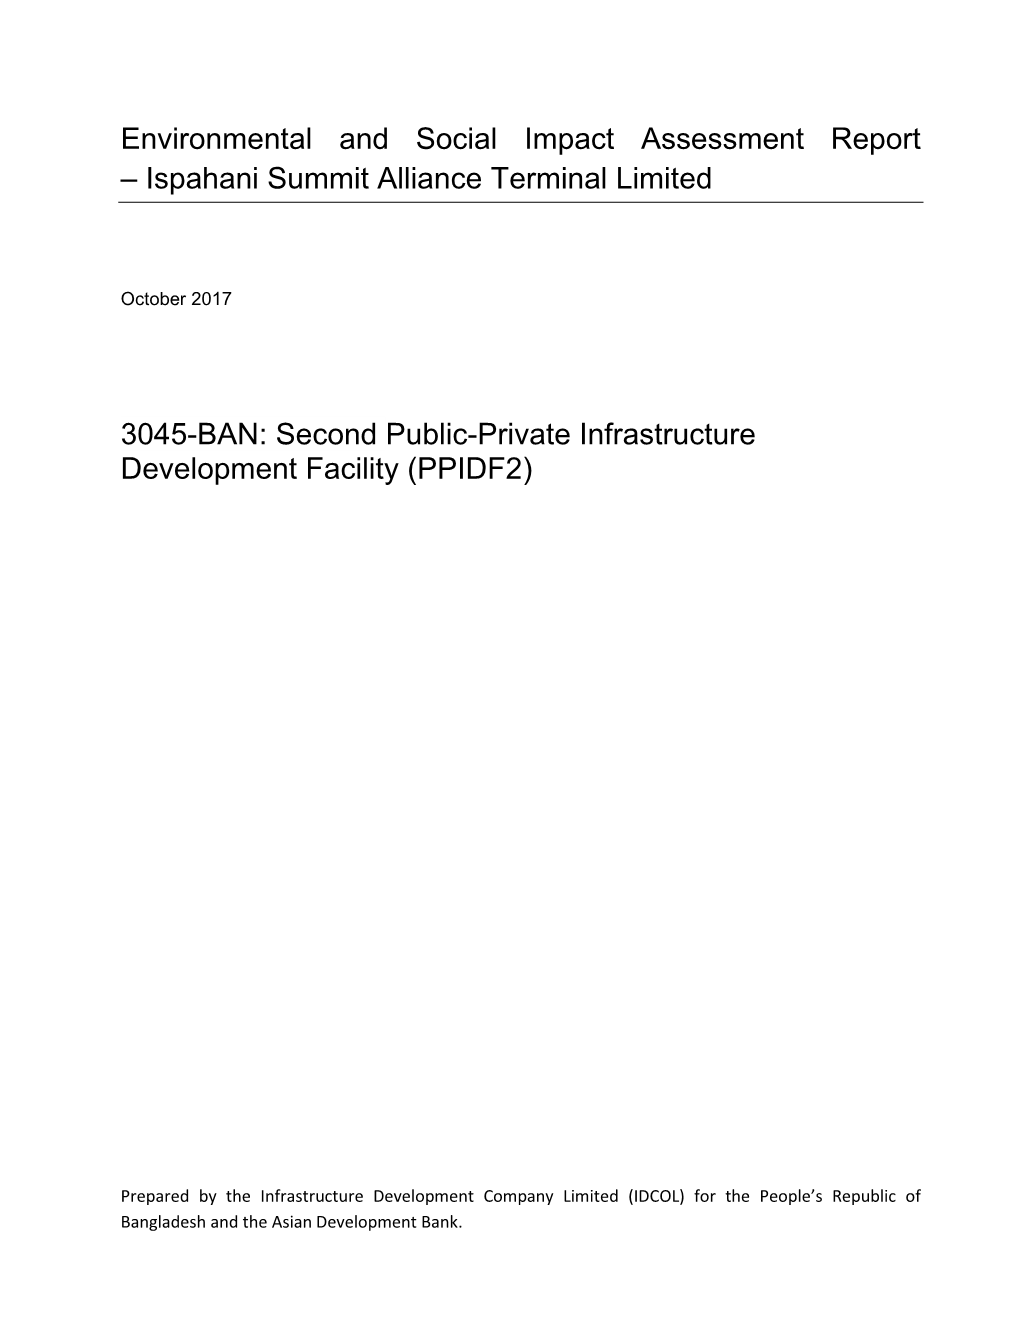 Ispahani Summit Alliance Terminal Limited